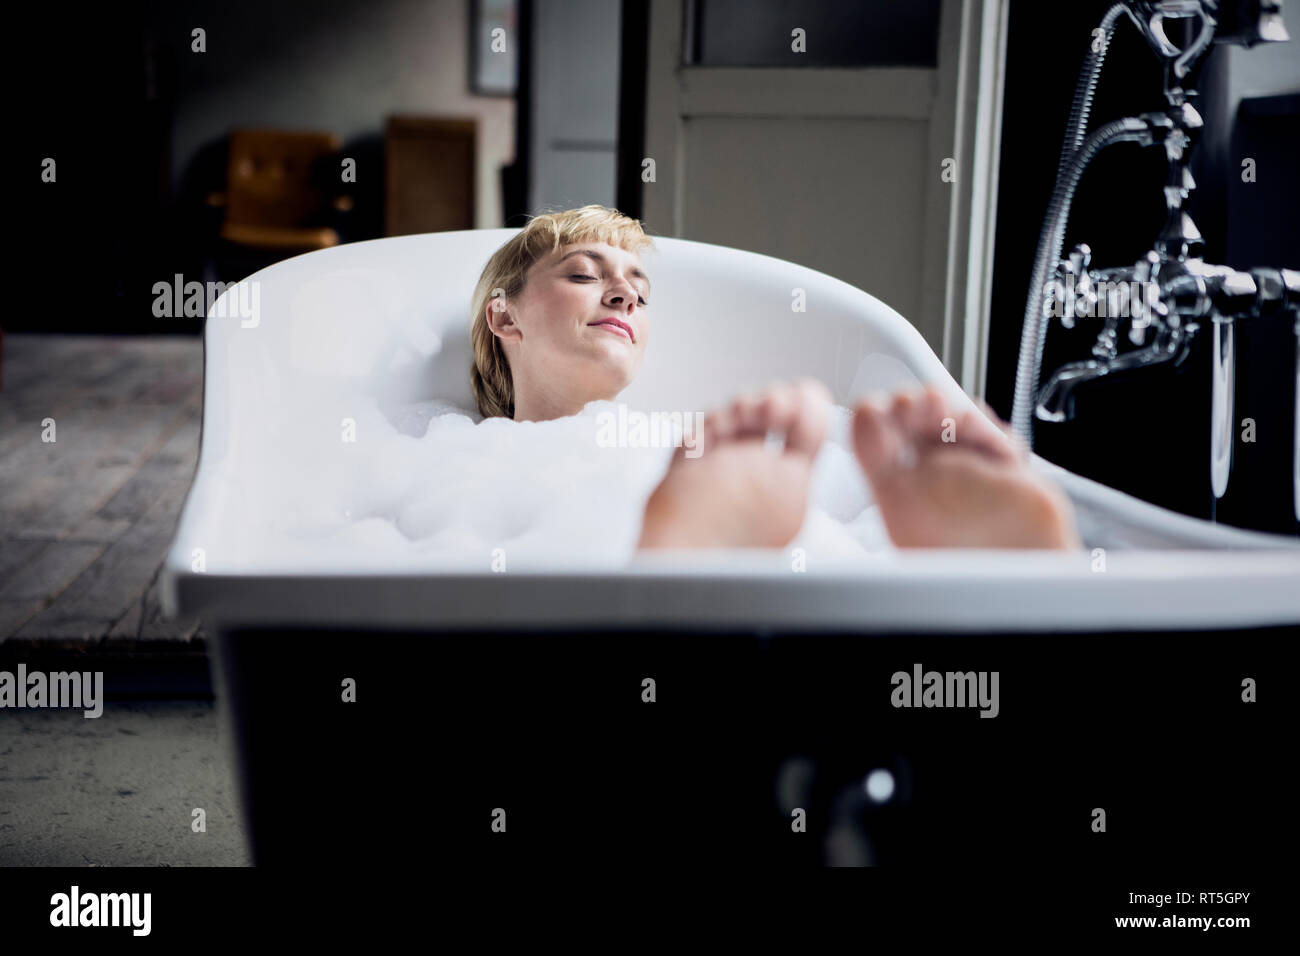 Blond woman taking bubble bath in a loft Stock Photo